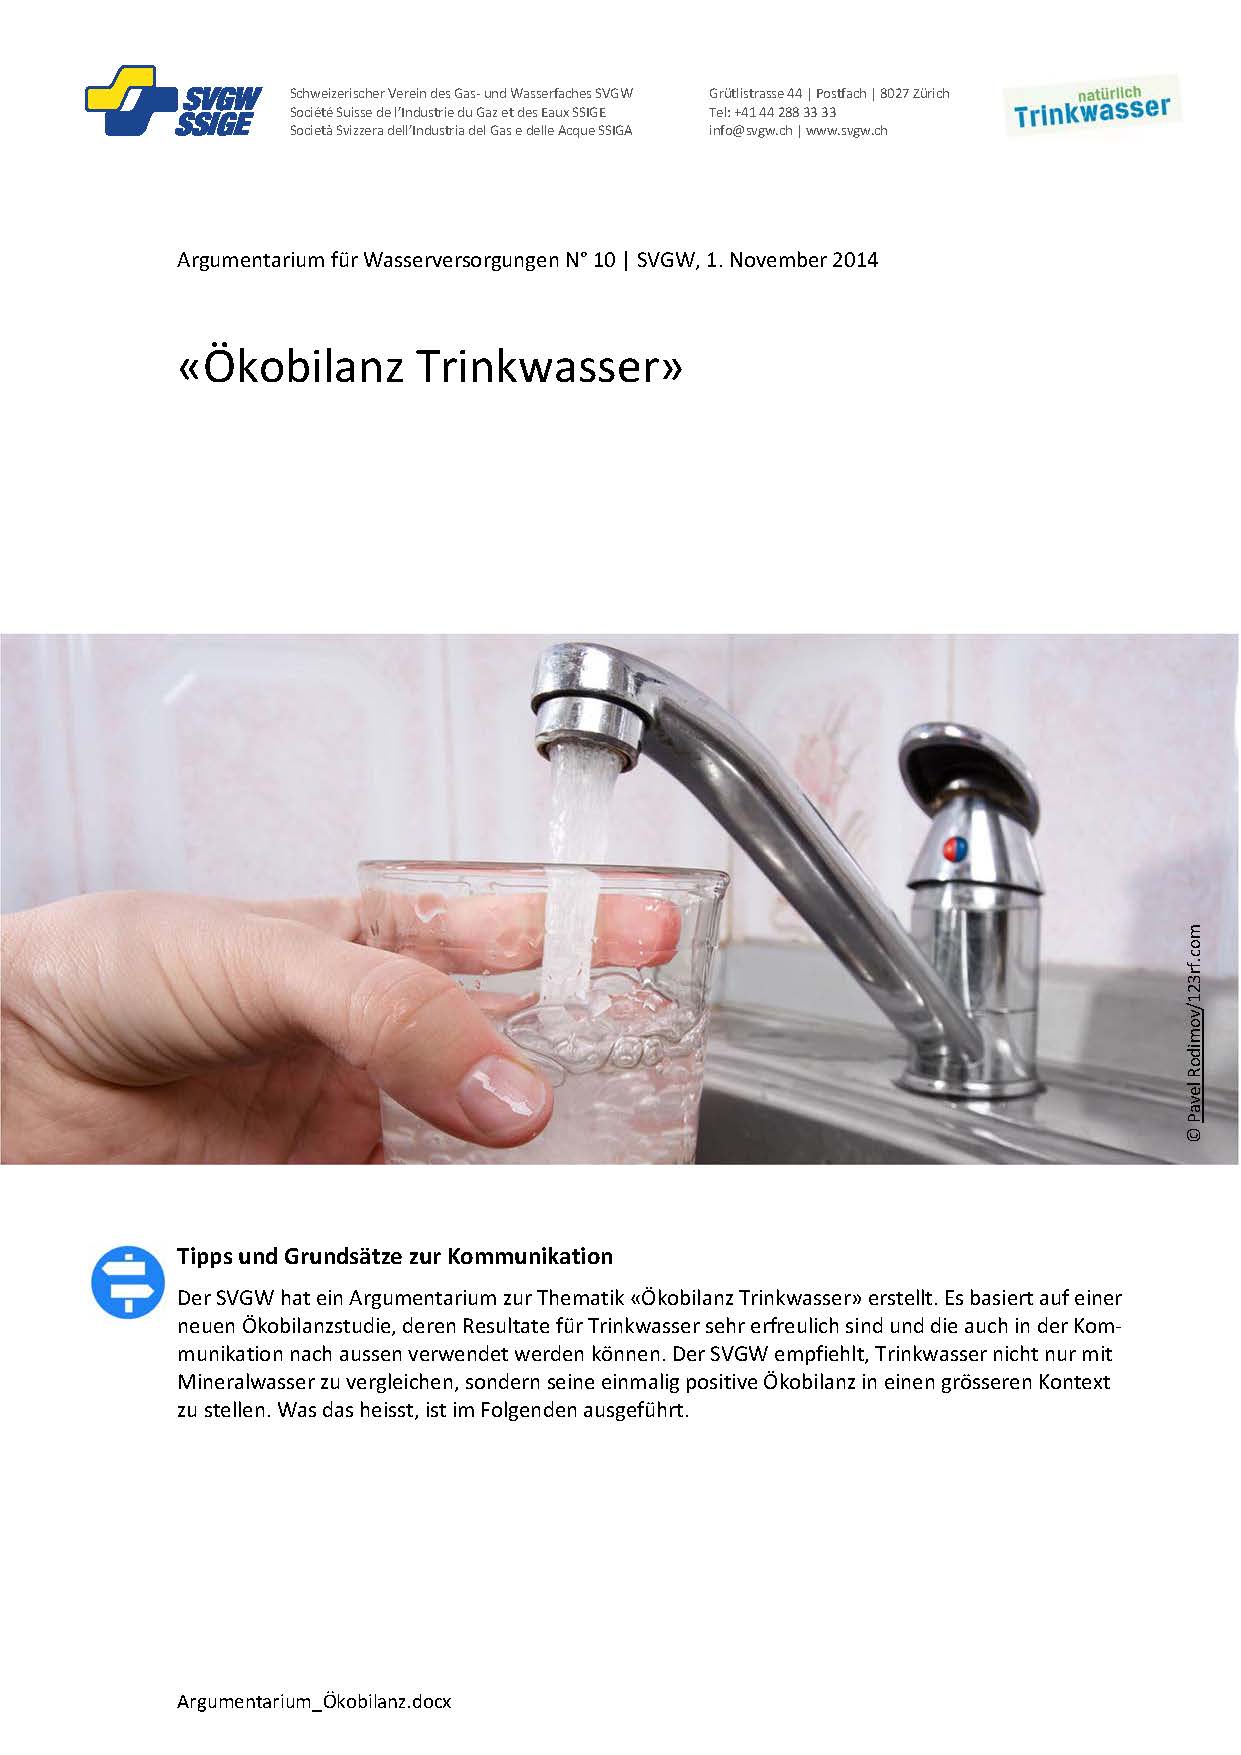 Argumentarium: «Ökobilanz Trinkwasser»